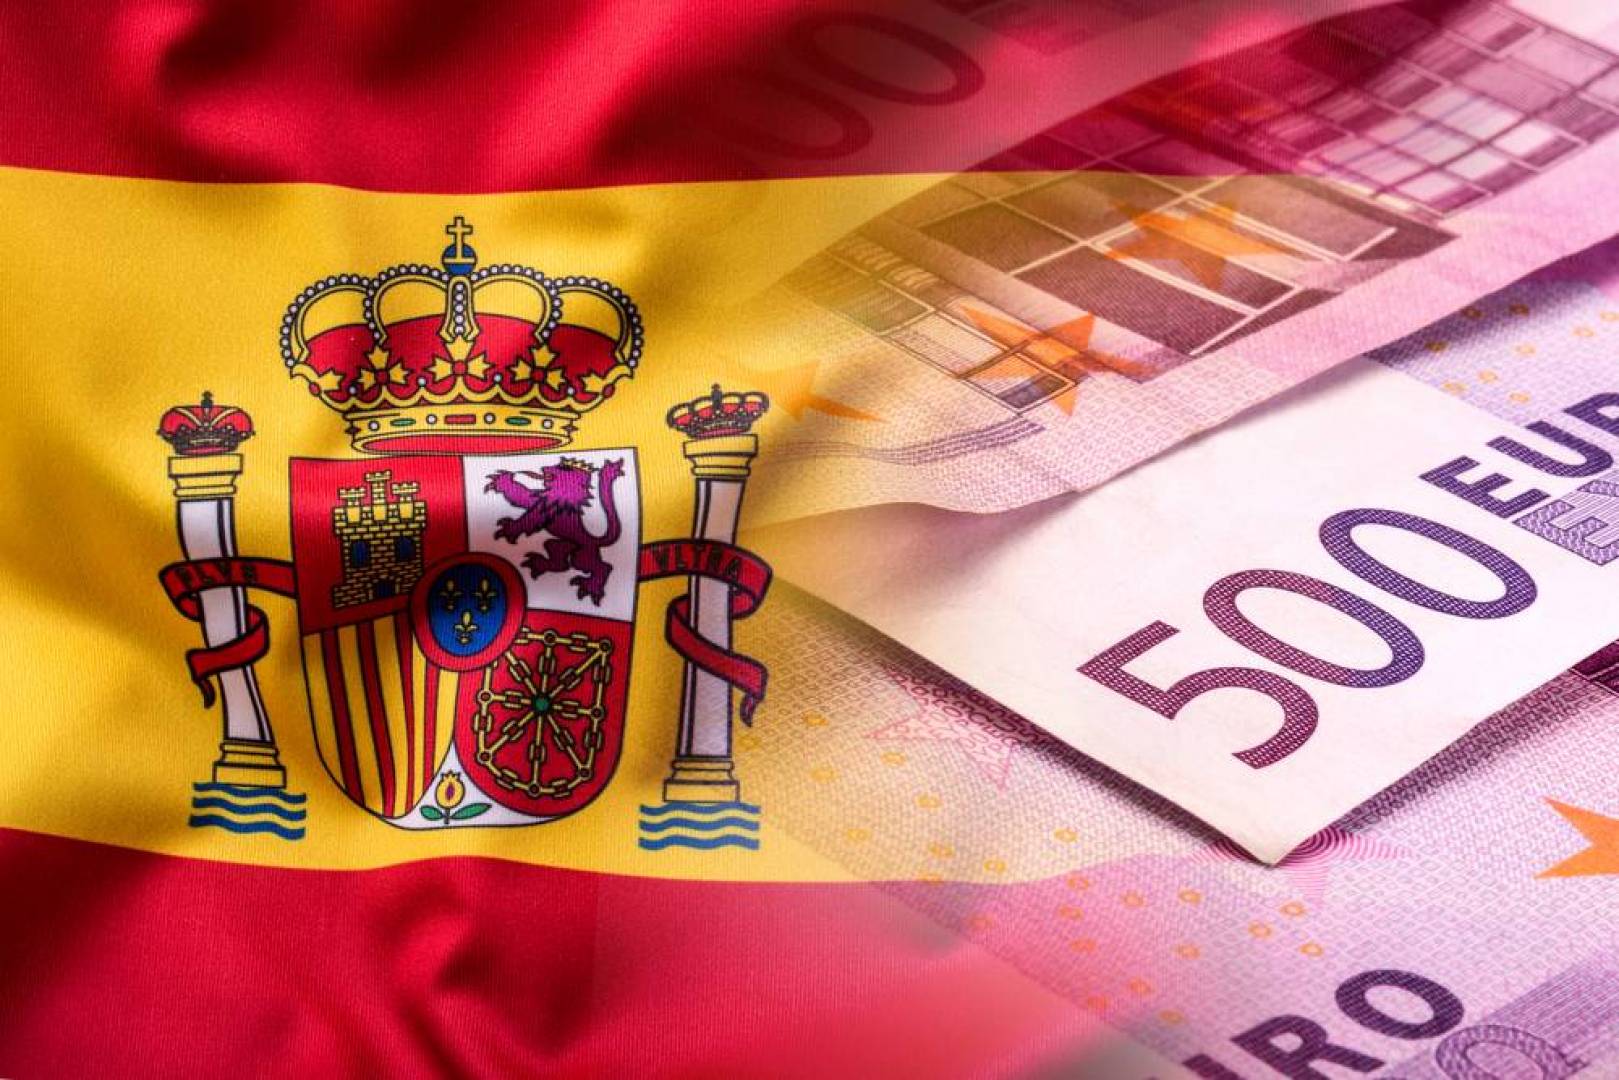 إعادة فرض القيود المرتبطة بكورونا توجه ضربة جديدة للاقتصاد الإسباني (تحليل)